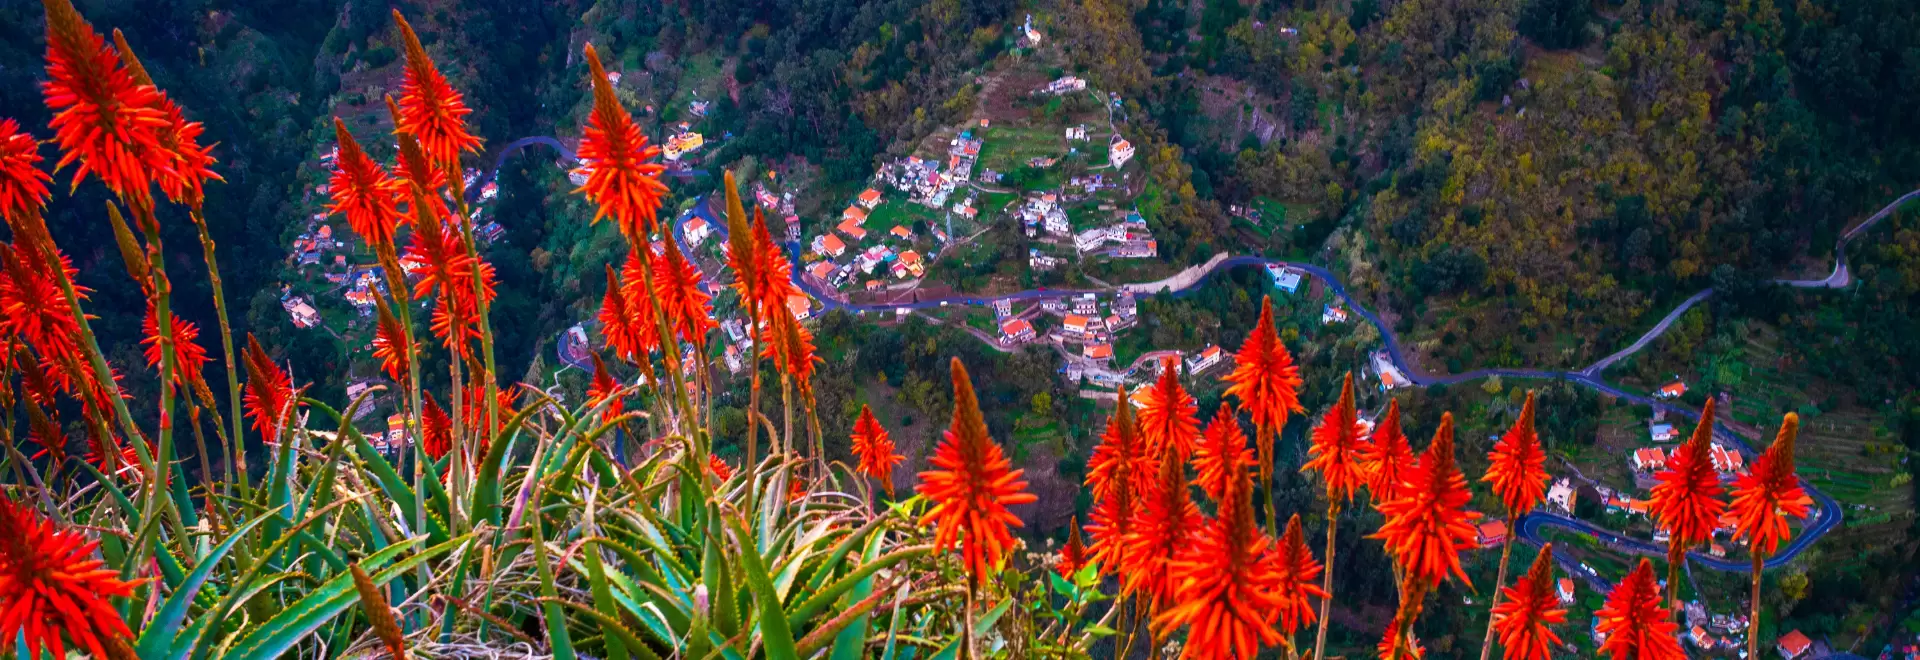 Revelion Madeira